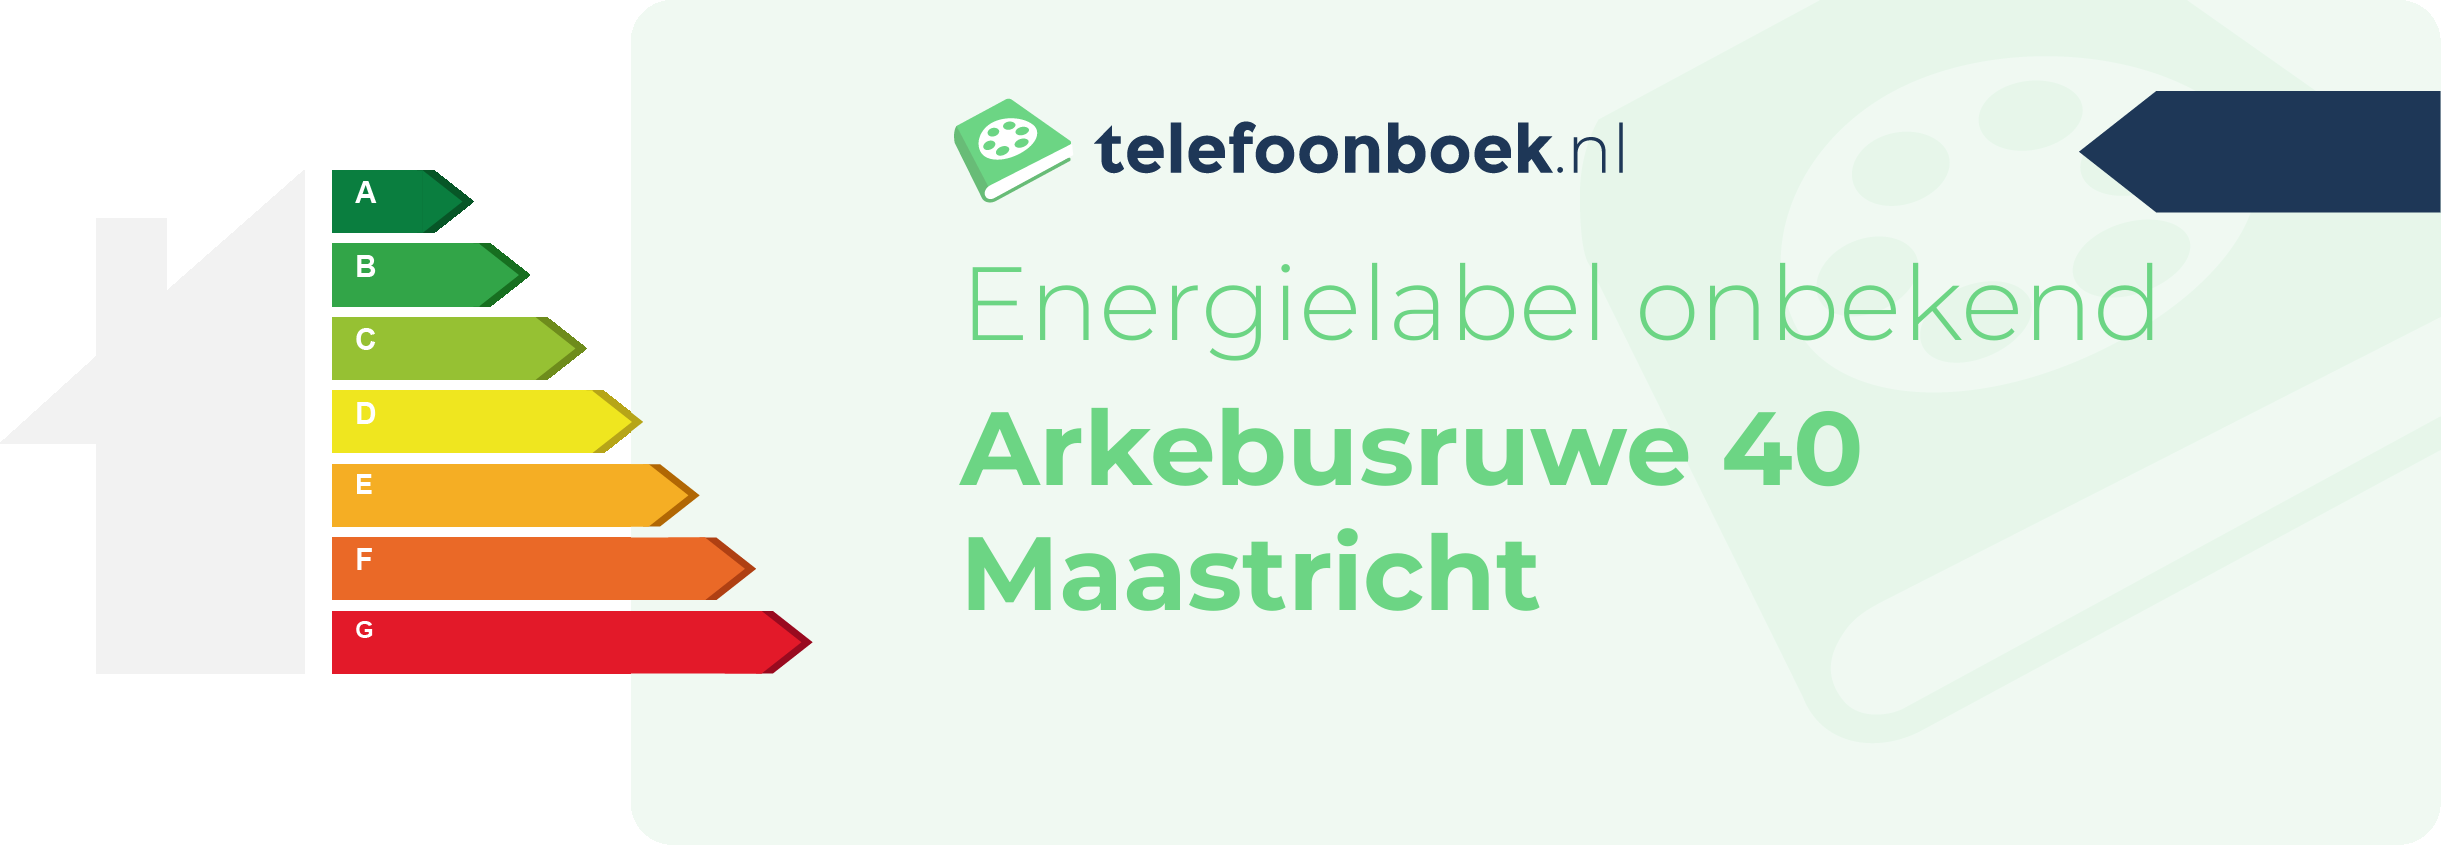 Energielabel Arkebusruwe 40 Maastricht